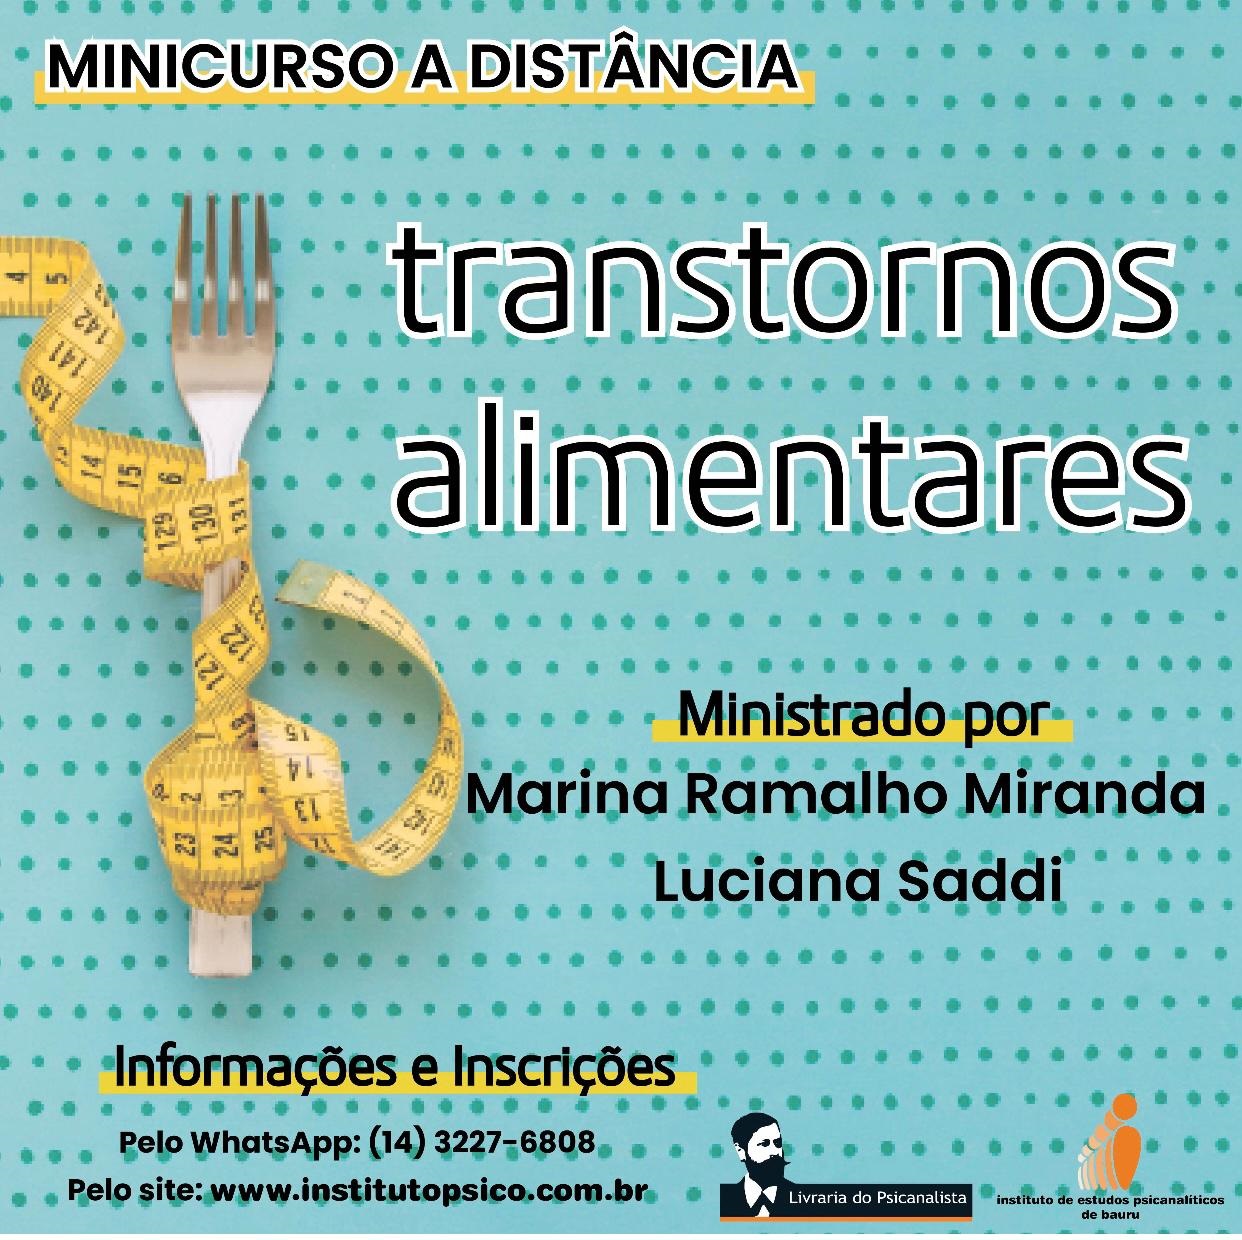 MINICURSO A DISTNCIA - TRANSTORNOS ALIMENTARES